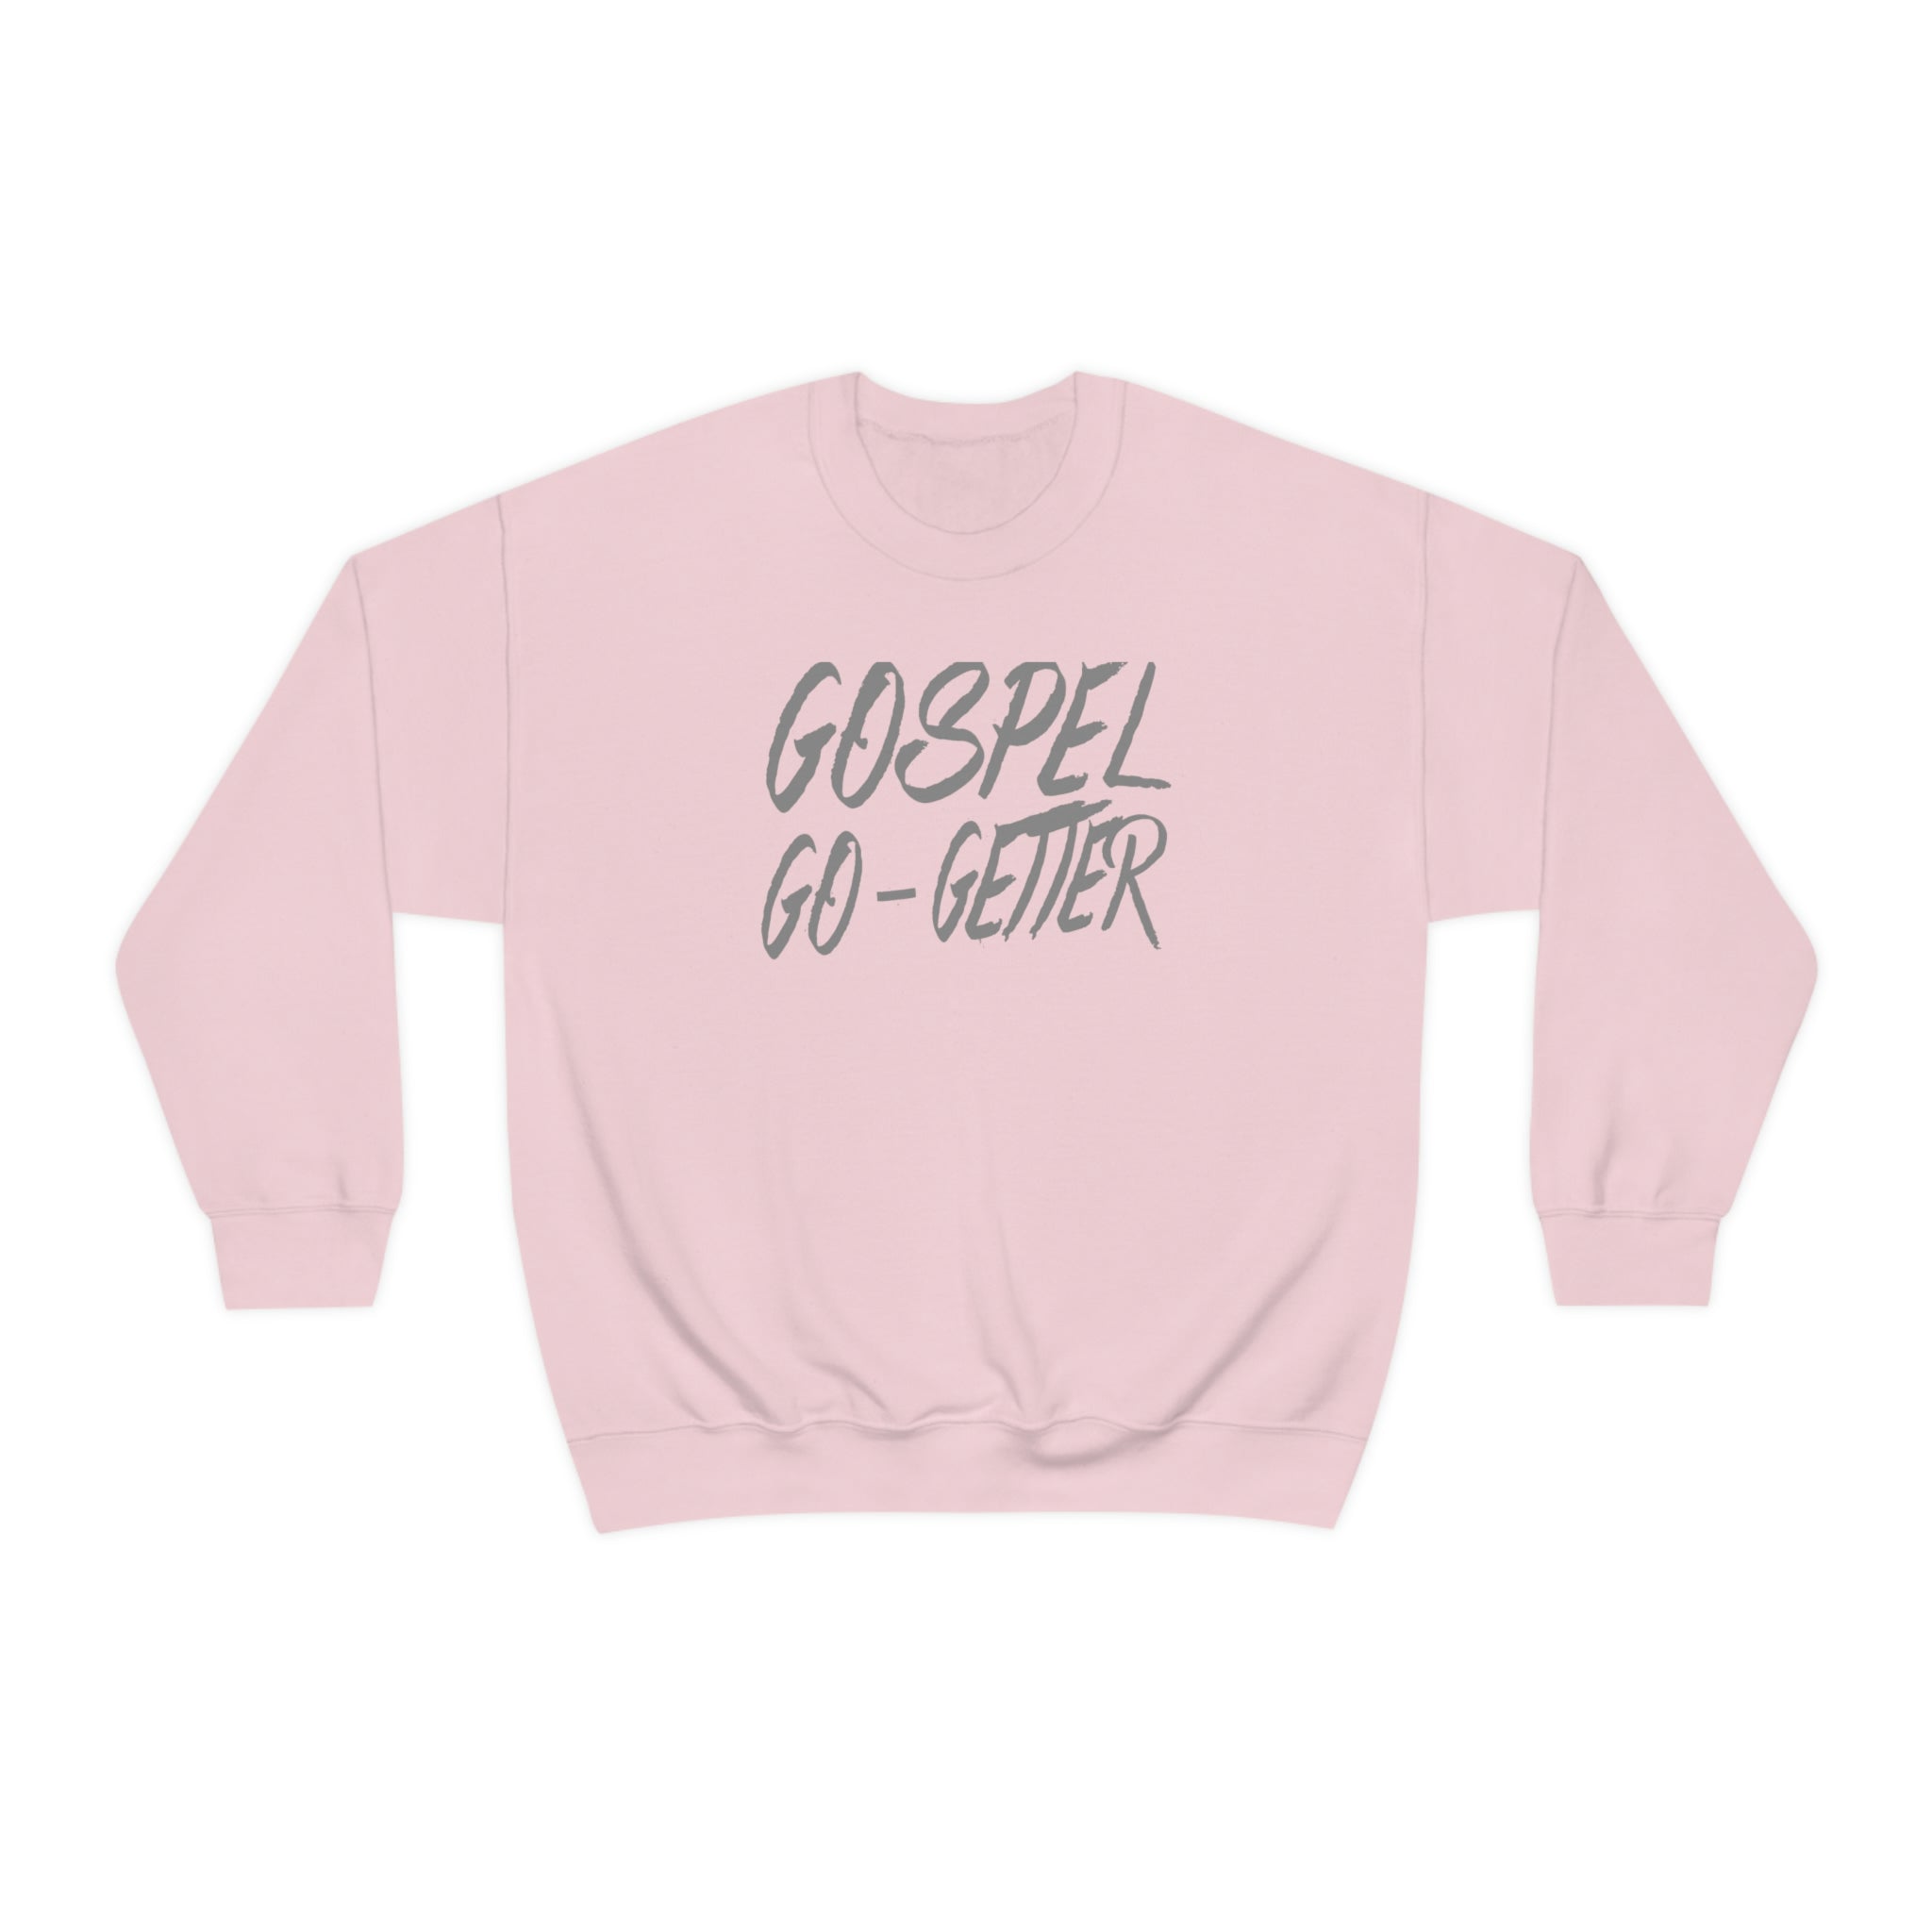 Gospel Go-Getter Sweatshirt